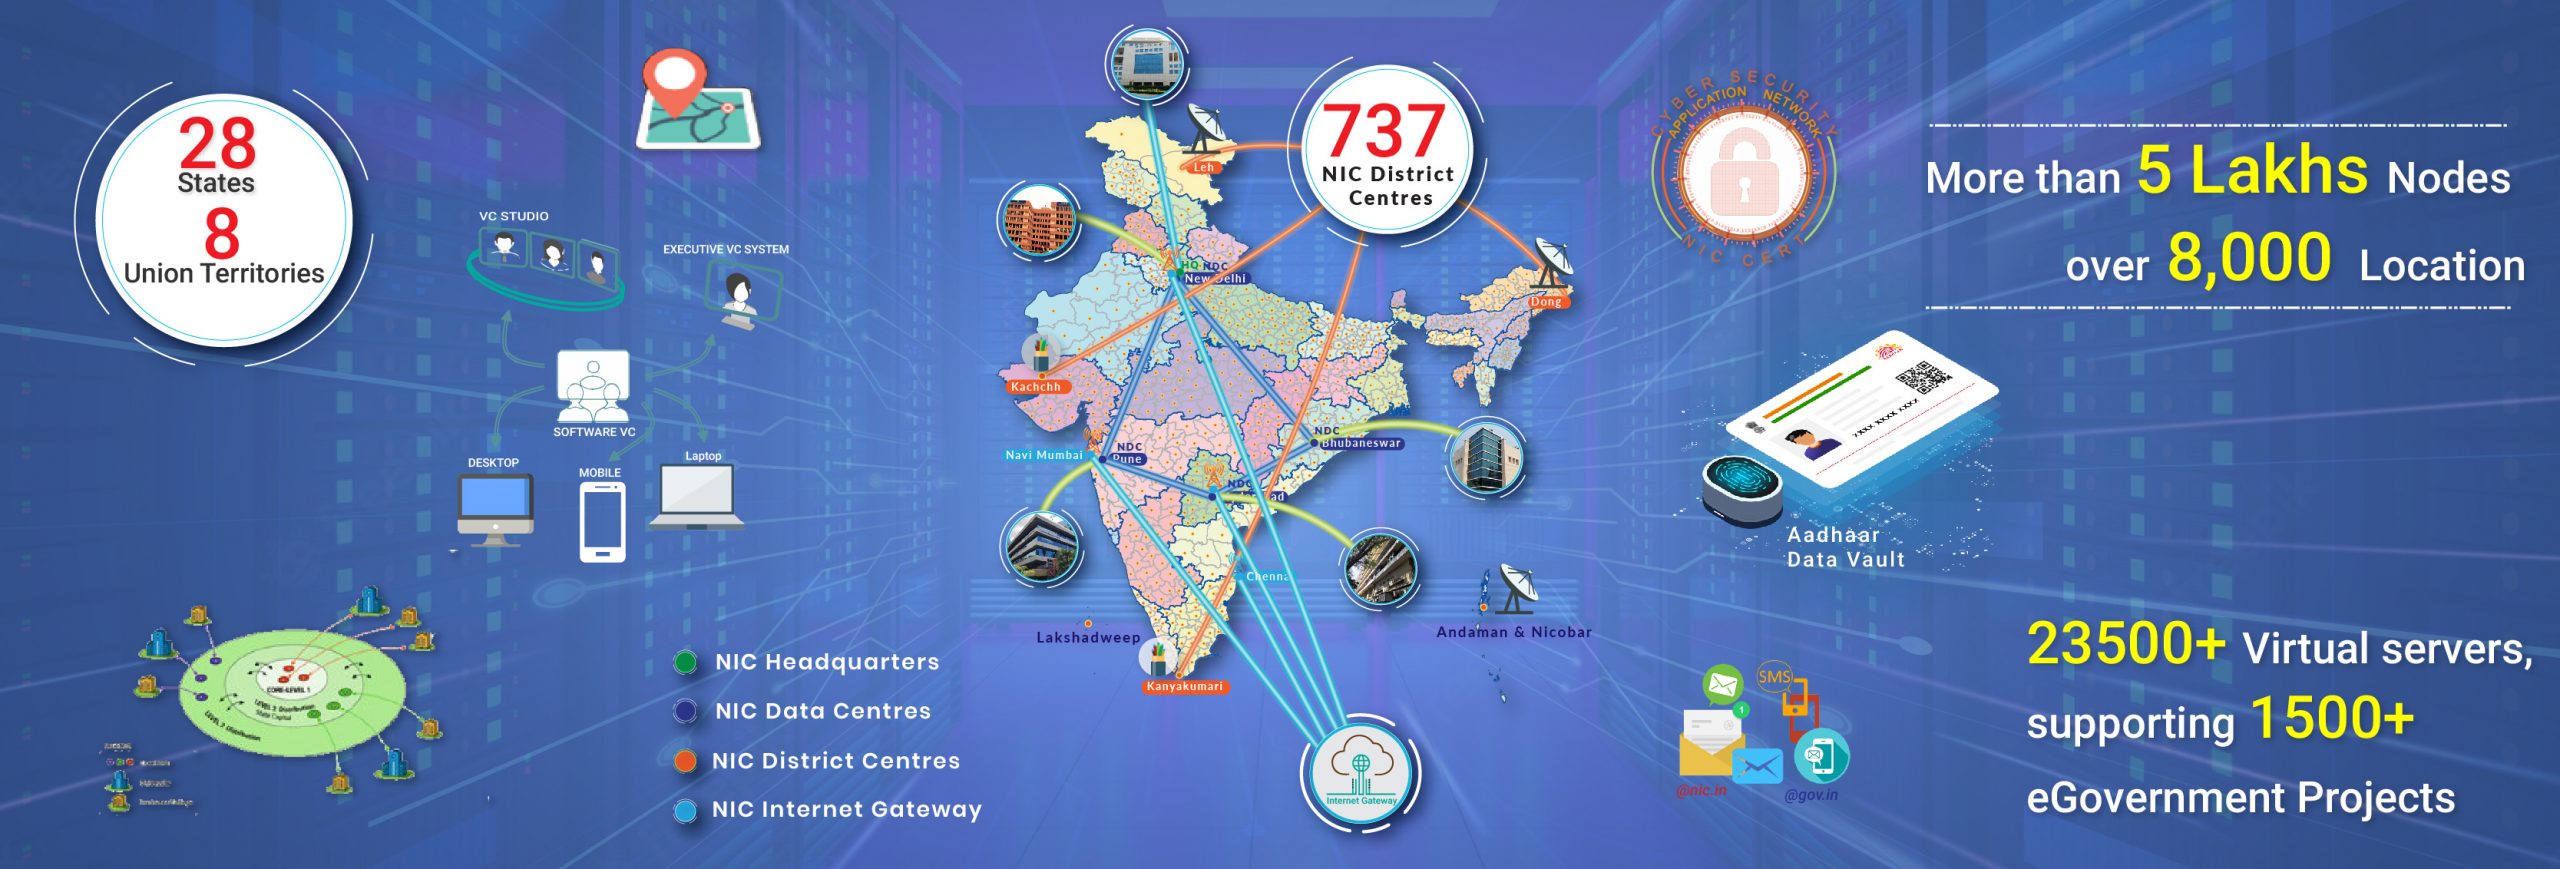 Image of डिजिटल सेवाओं के साथ एनआईसी की राष्ट्रव्यापी उपस्थिति